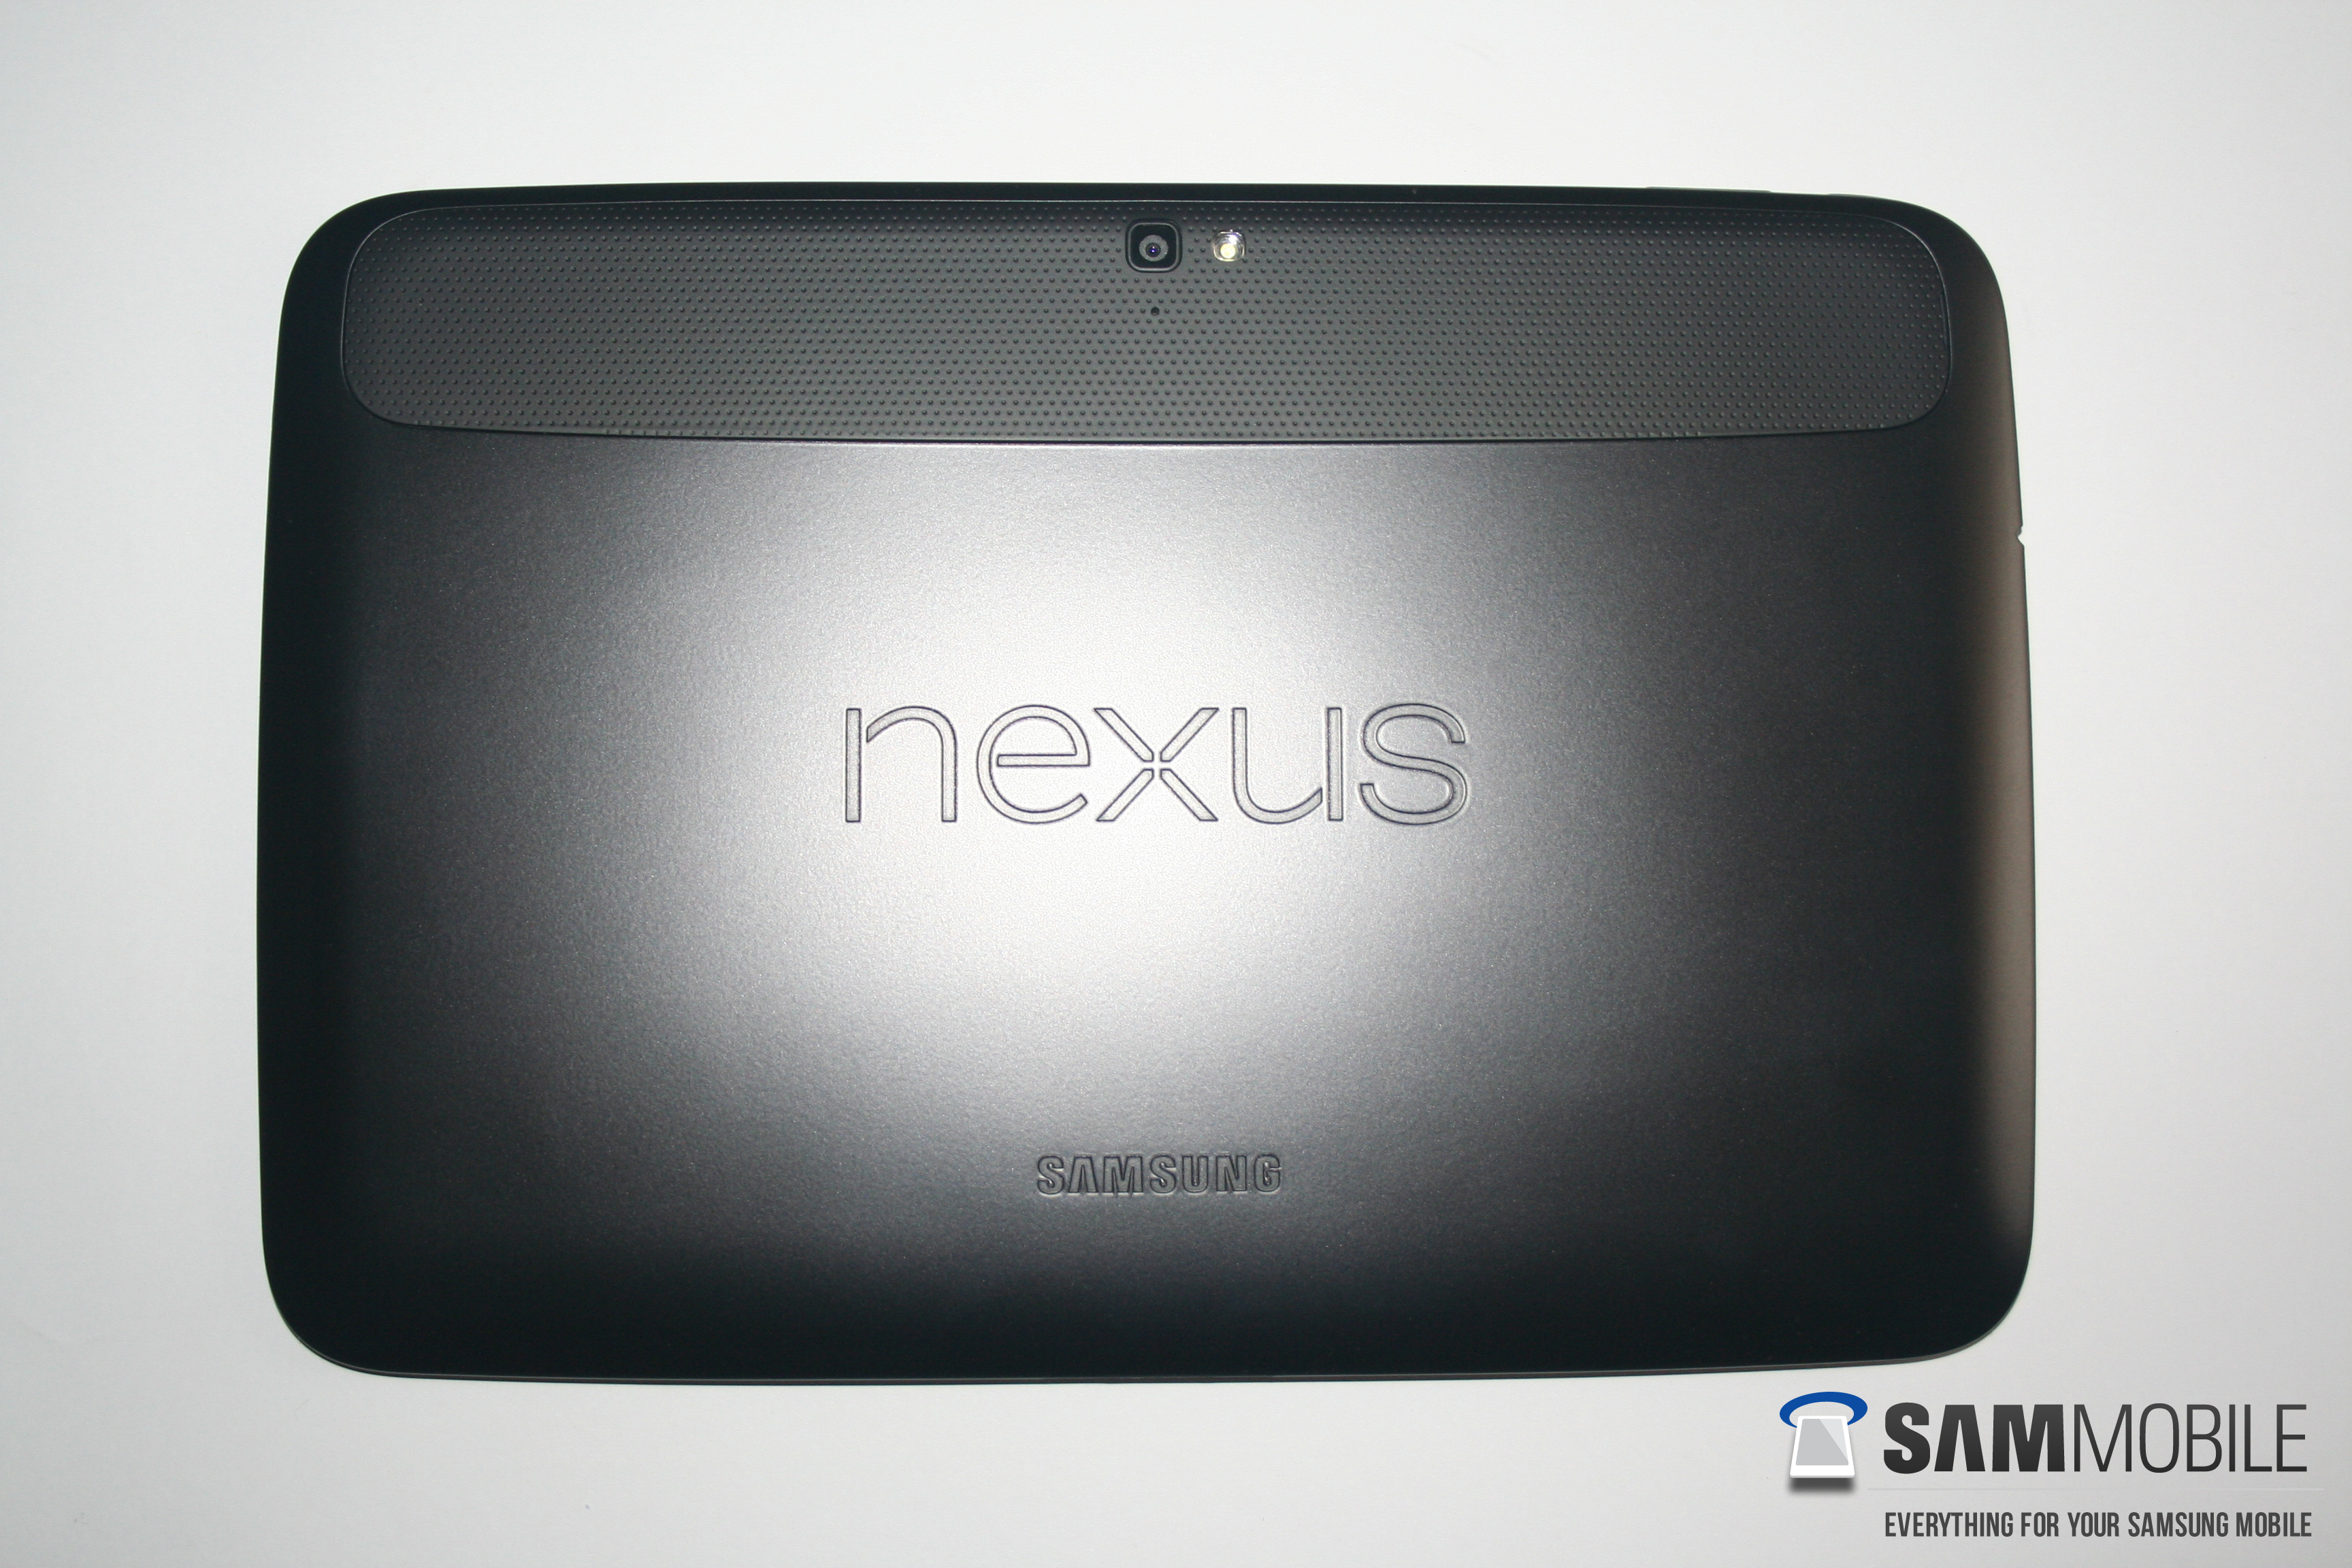 nexus 10 tablet